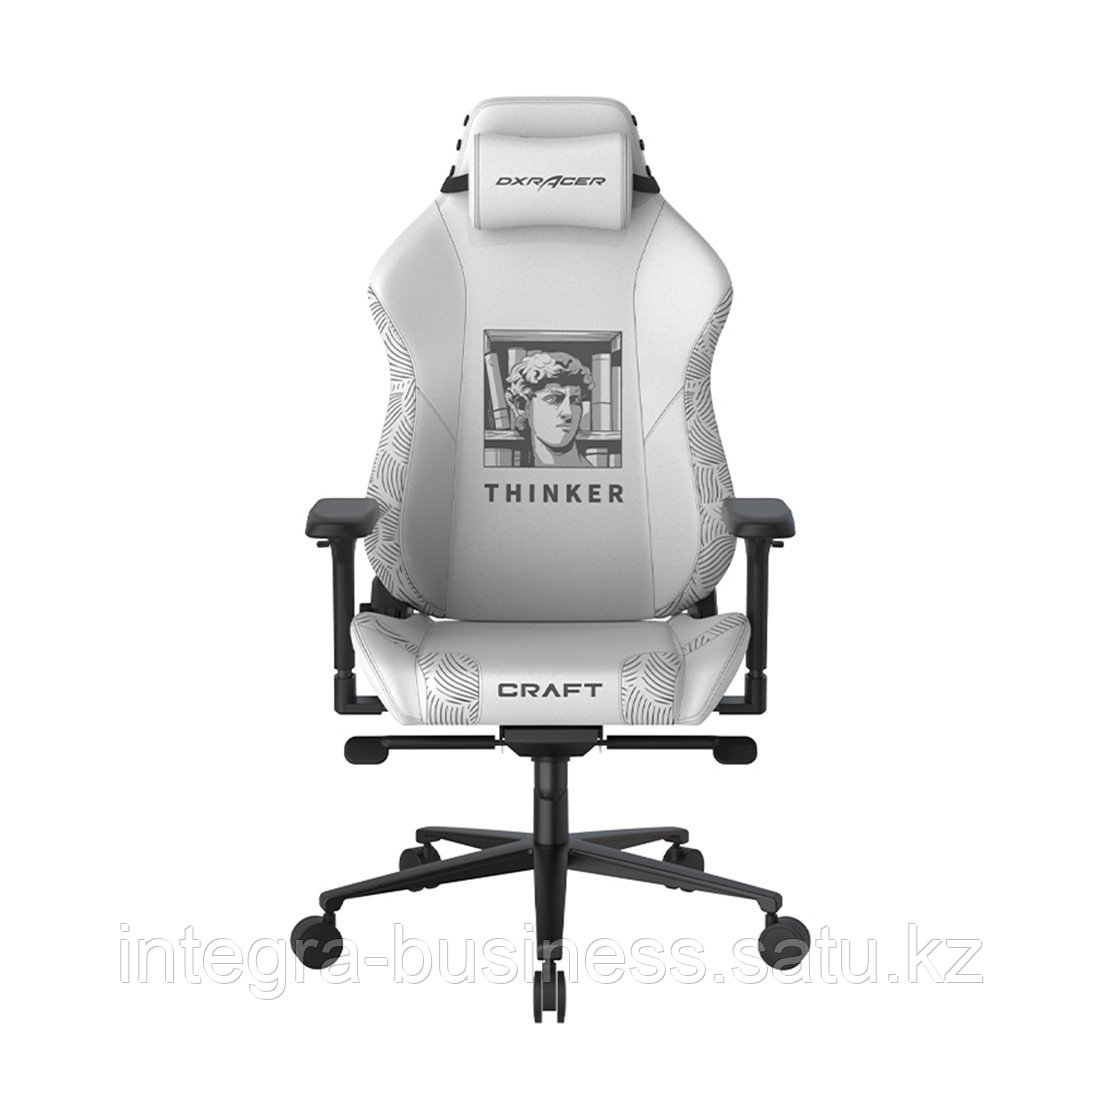 Игровое компьютерное кресло DX Racer CRA/001/W/Thinker